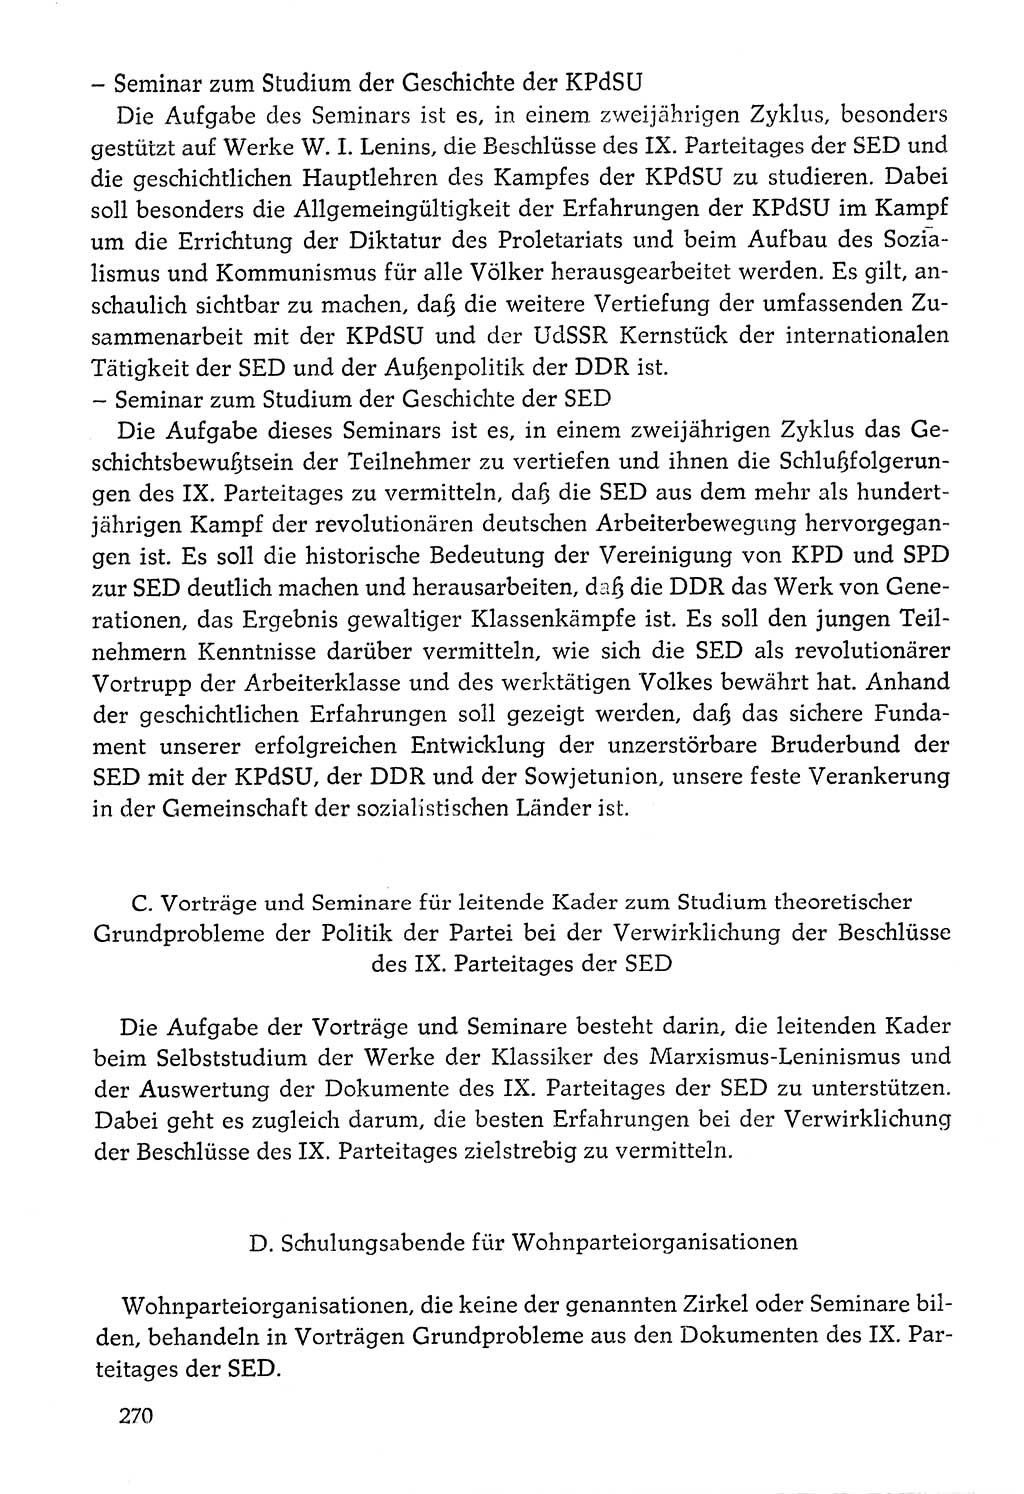 Dokumente der Sozialistischen Einheitspartei Deutschlands (SED) [Deutsche Demokratische Republik (DDR)] 1976-1977, Seite 270 (Dok. SED DDR 1976-1977, S. 270)